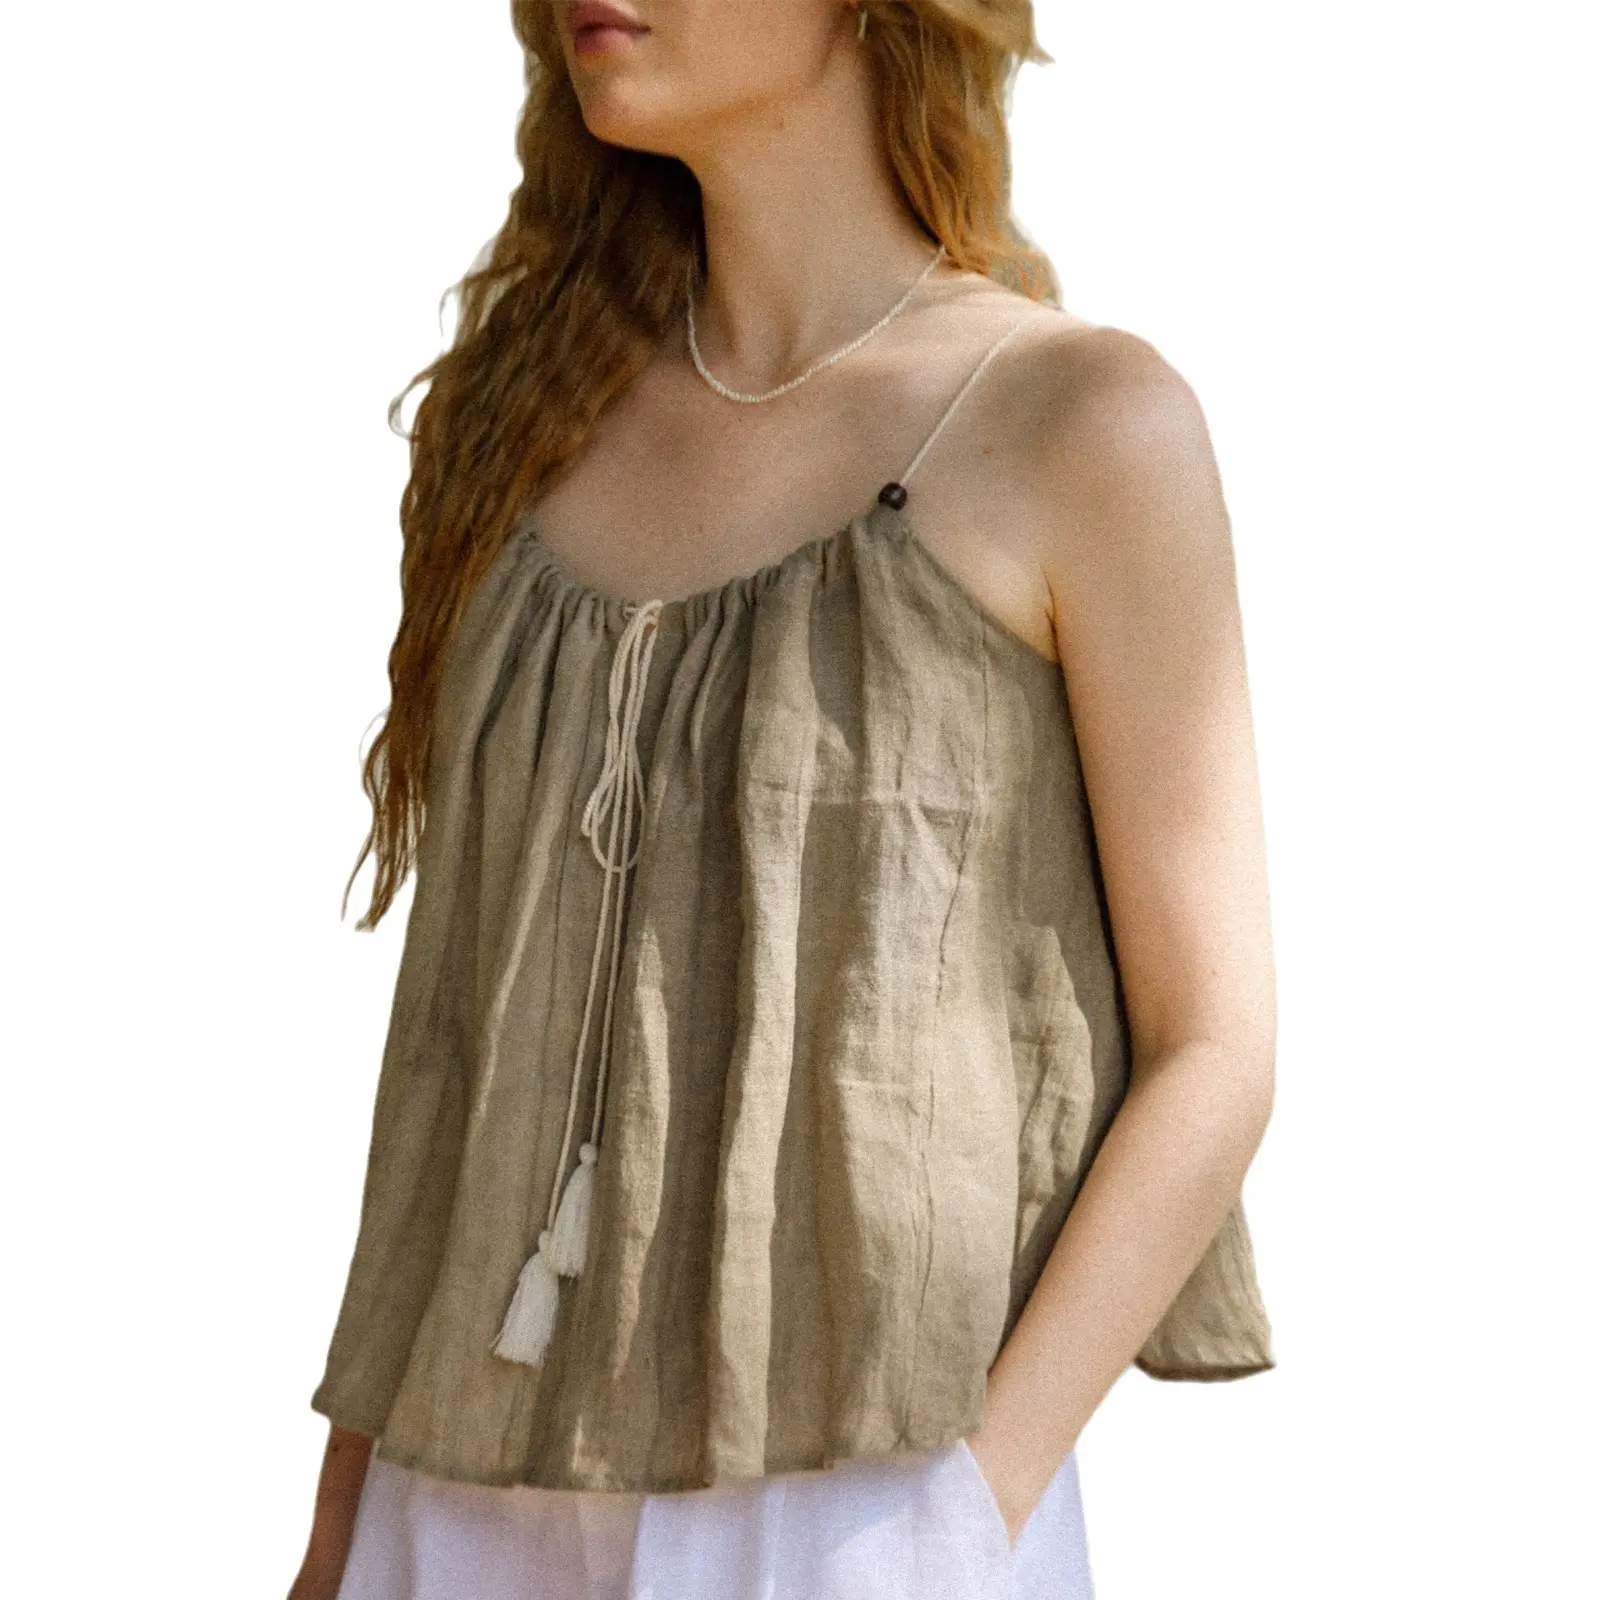 Semplice abbigliamento donna taglie forti camicette estive in lino 100% eleganti top alla moda senza maniche